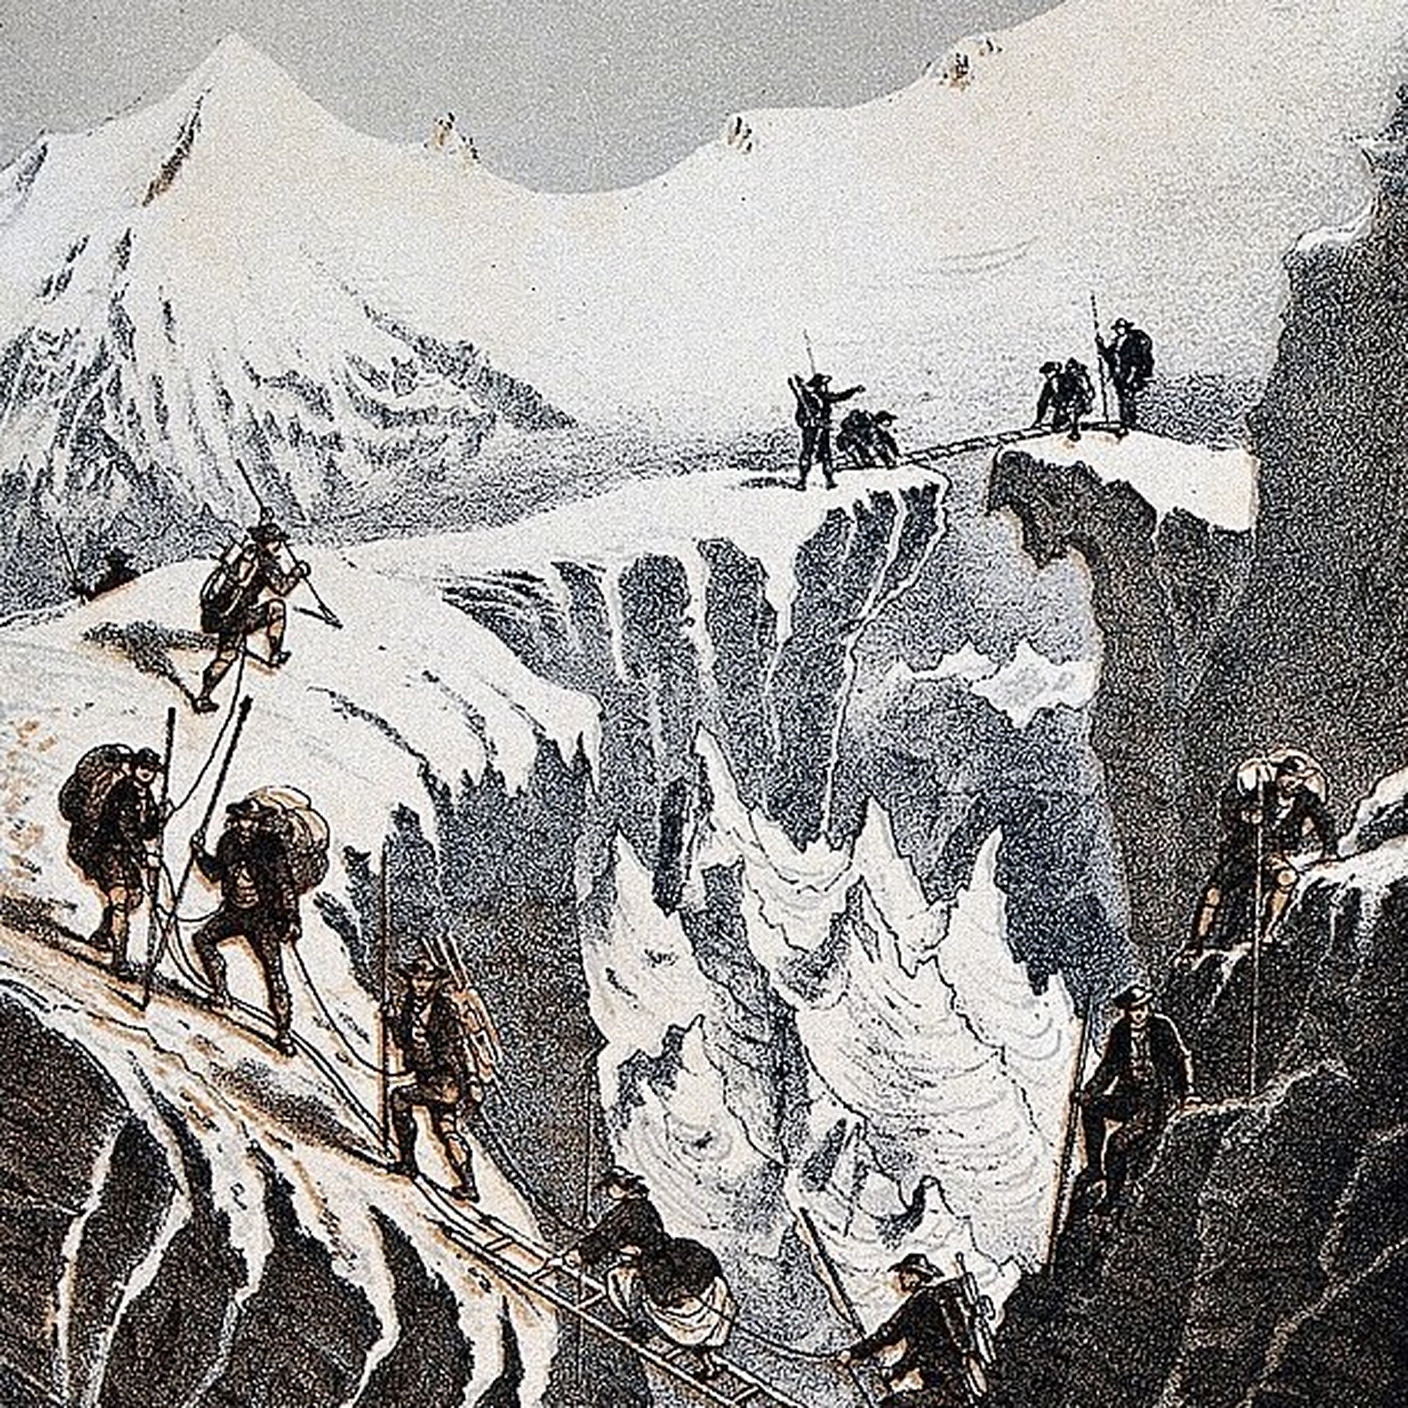 Henriette d'Angeville e il suo seguito durante la salita al Monte Bianco in una litografia di F. Baumann